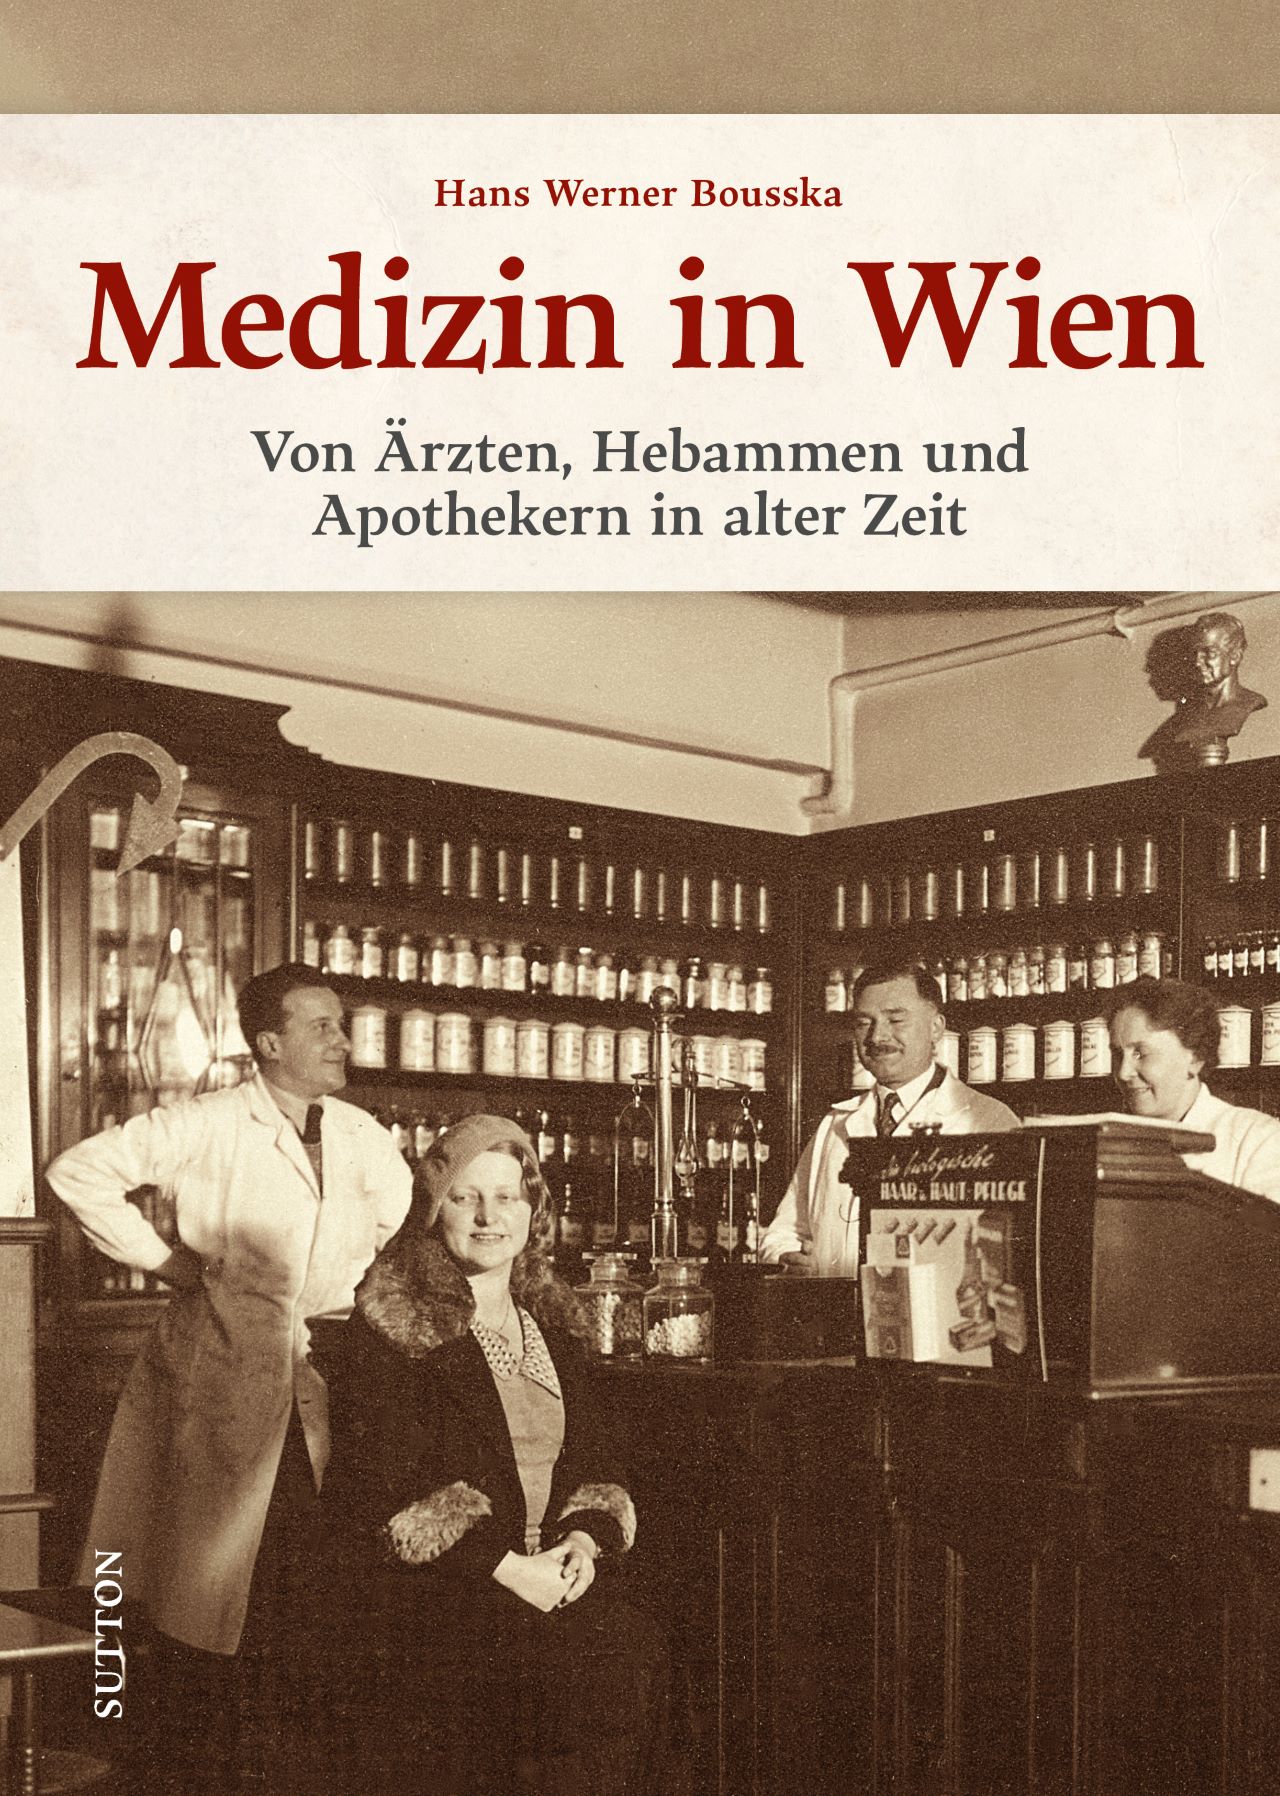 Publikation: Medizin in Wien, Bezirksmuseum Meidling, Sutton 2022